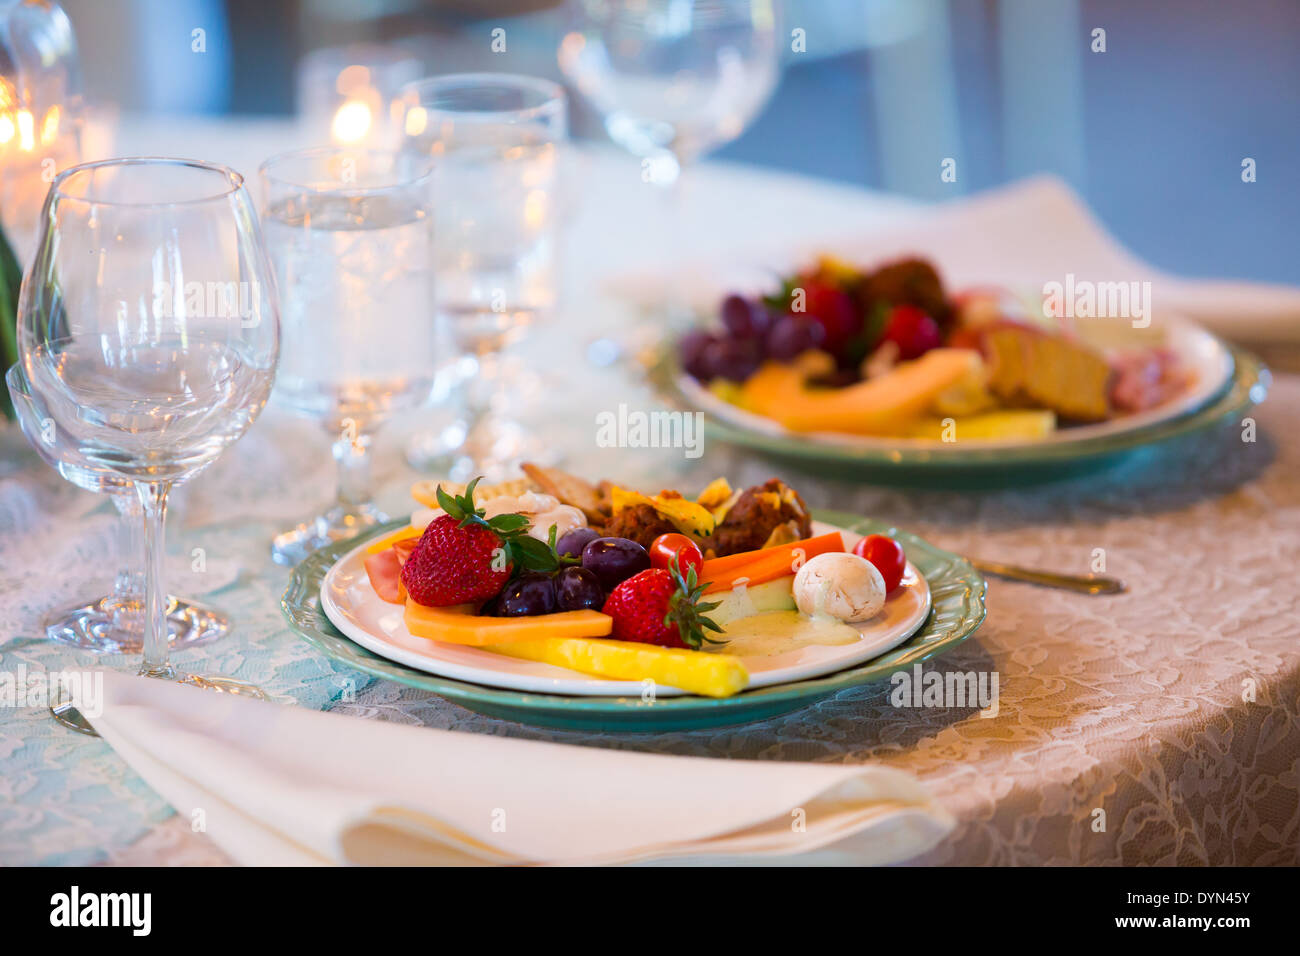 Comida de boda en la recepción incluye cena en un plato en una mesa. Foto de stock